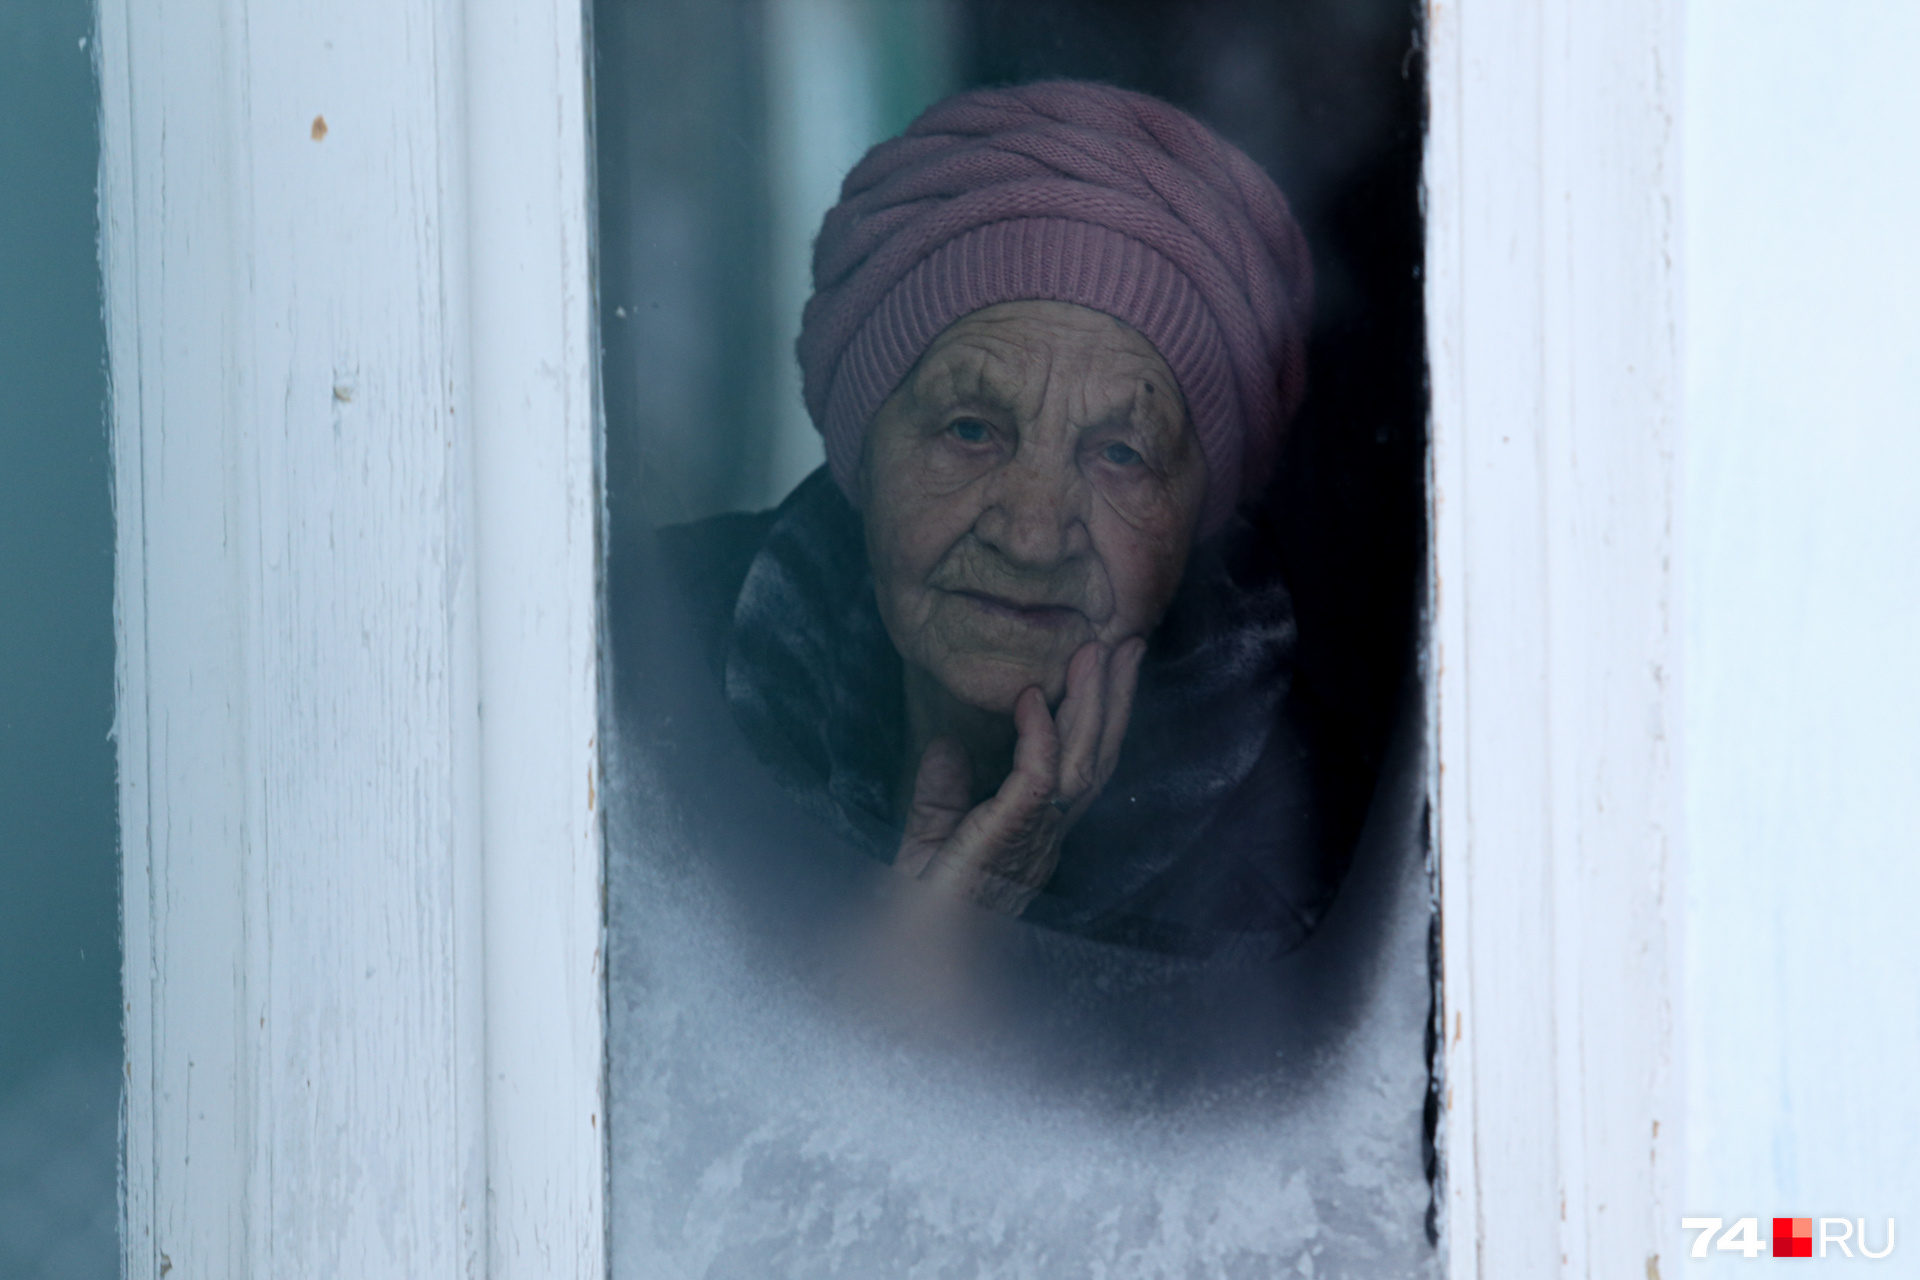 Анна Евгеньевна живет в поселке станция Шершни больше 40 лет, говорит, раньше никаких проблем не было